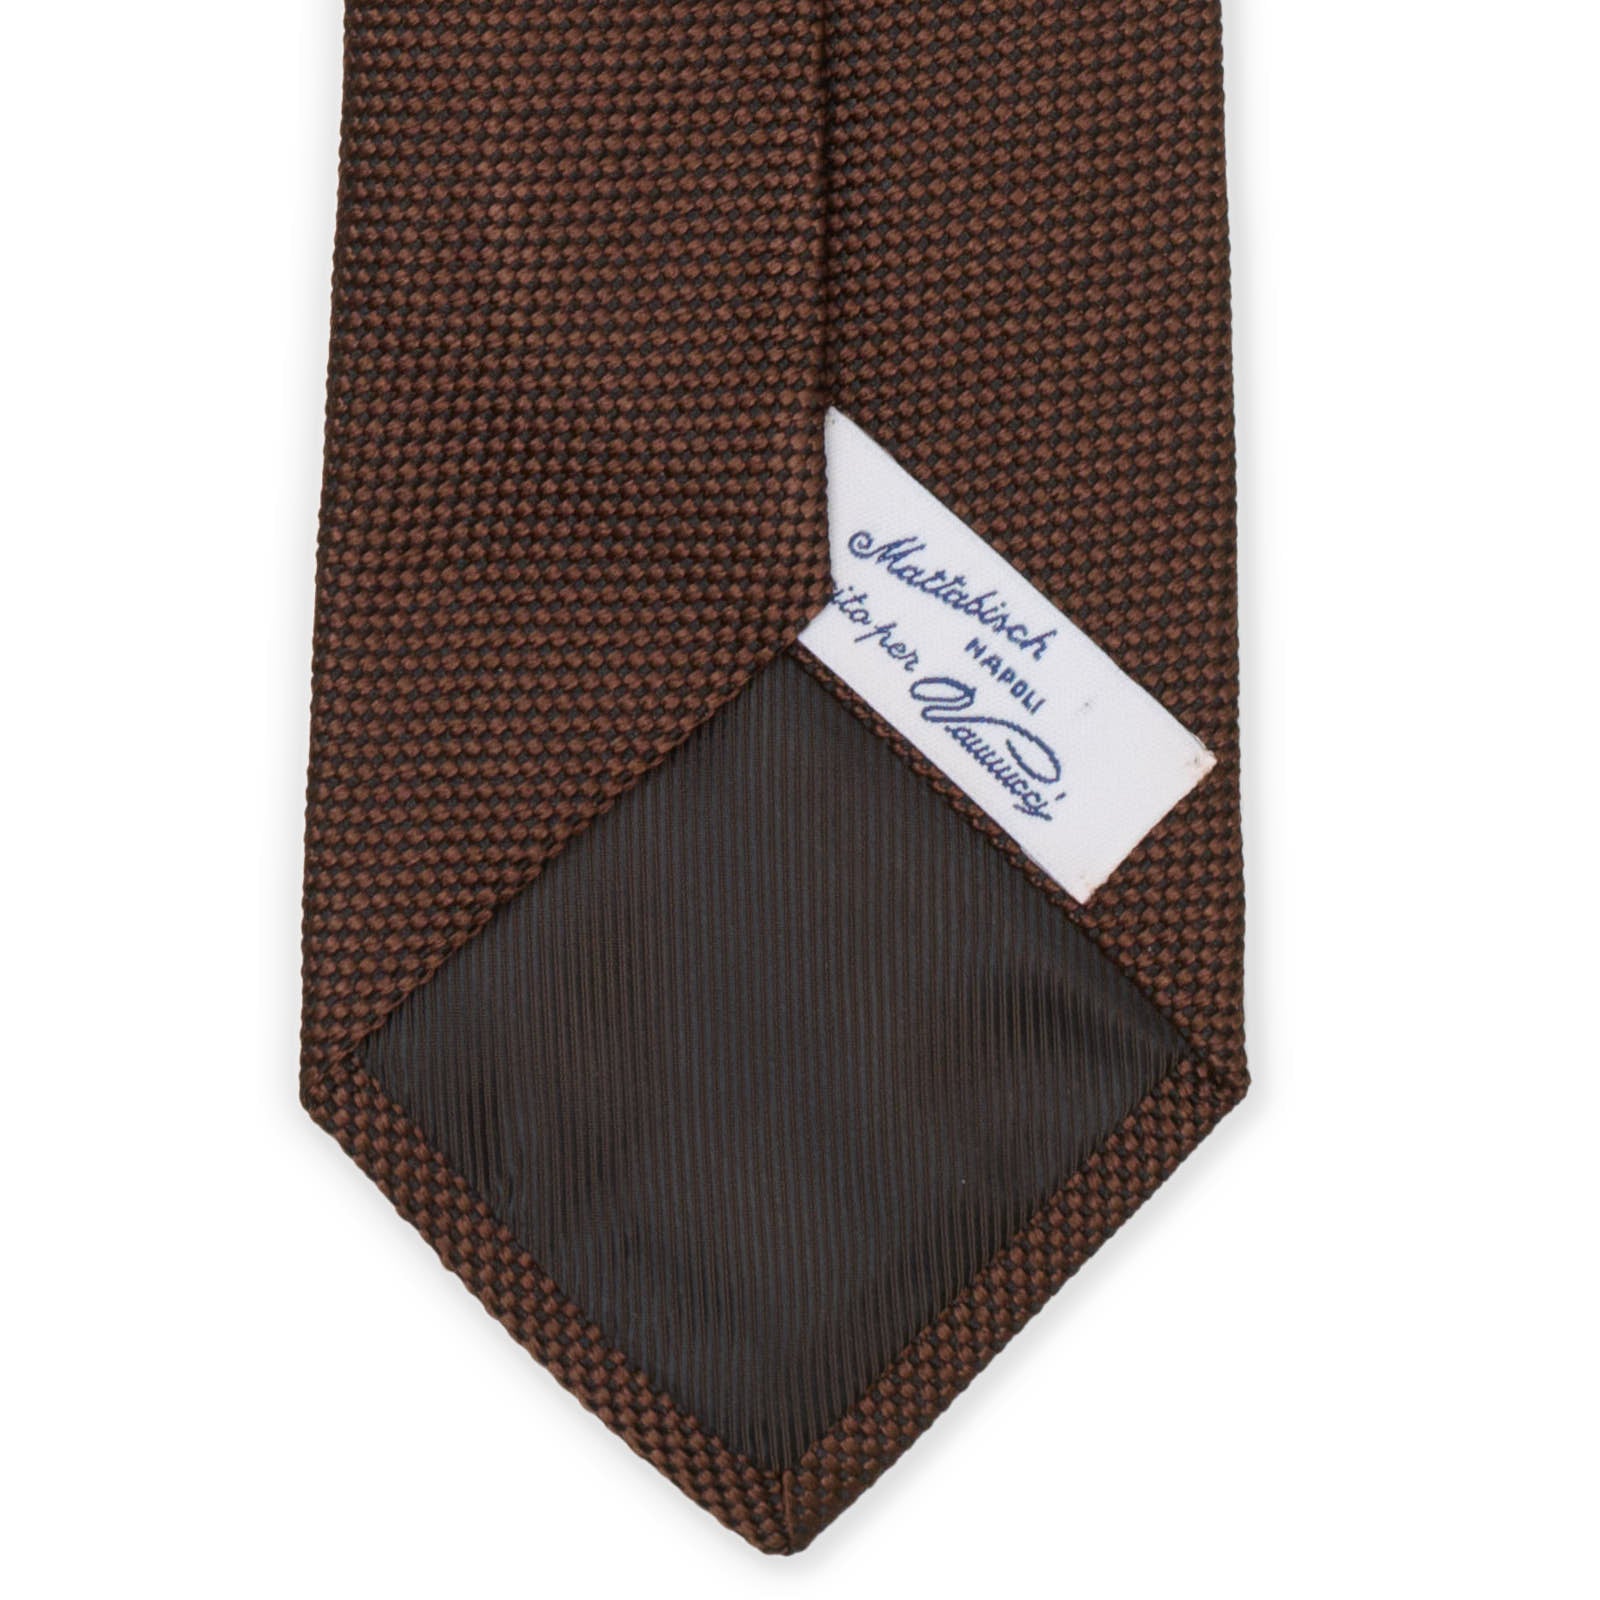 MATTABISCH FOR VANNUCCI Brown Micro Silk Tie NEW